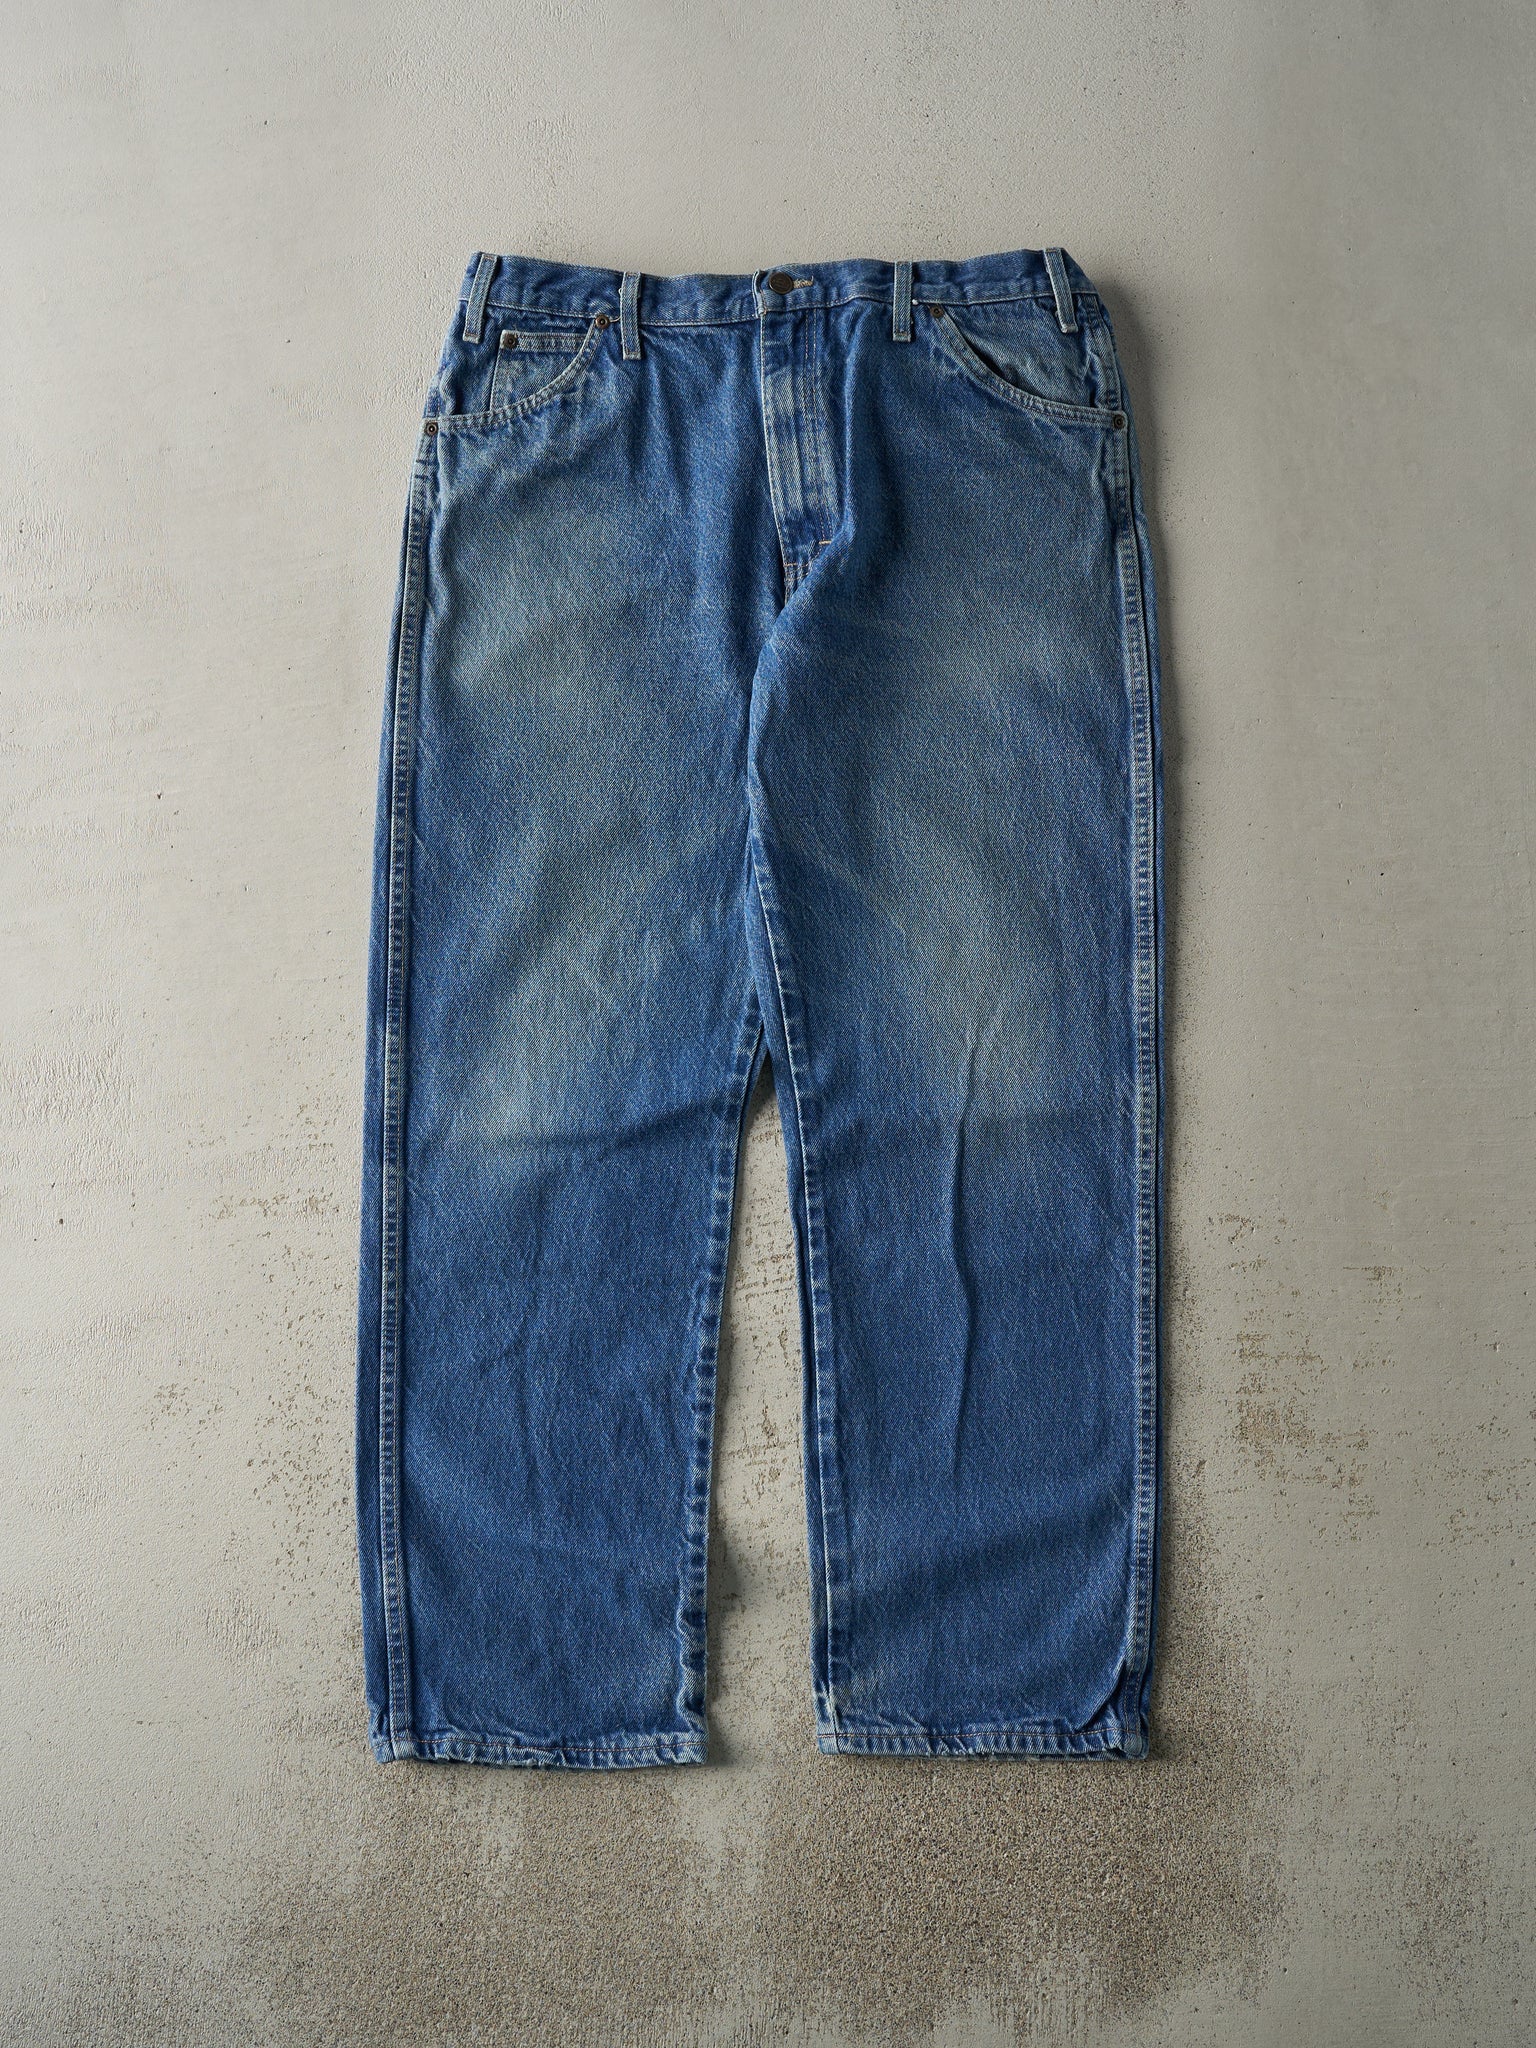 Vintage 90s Mid Wash Dickies Jeans (36x31.5)